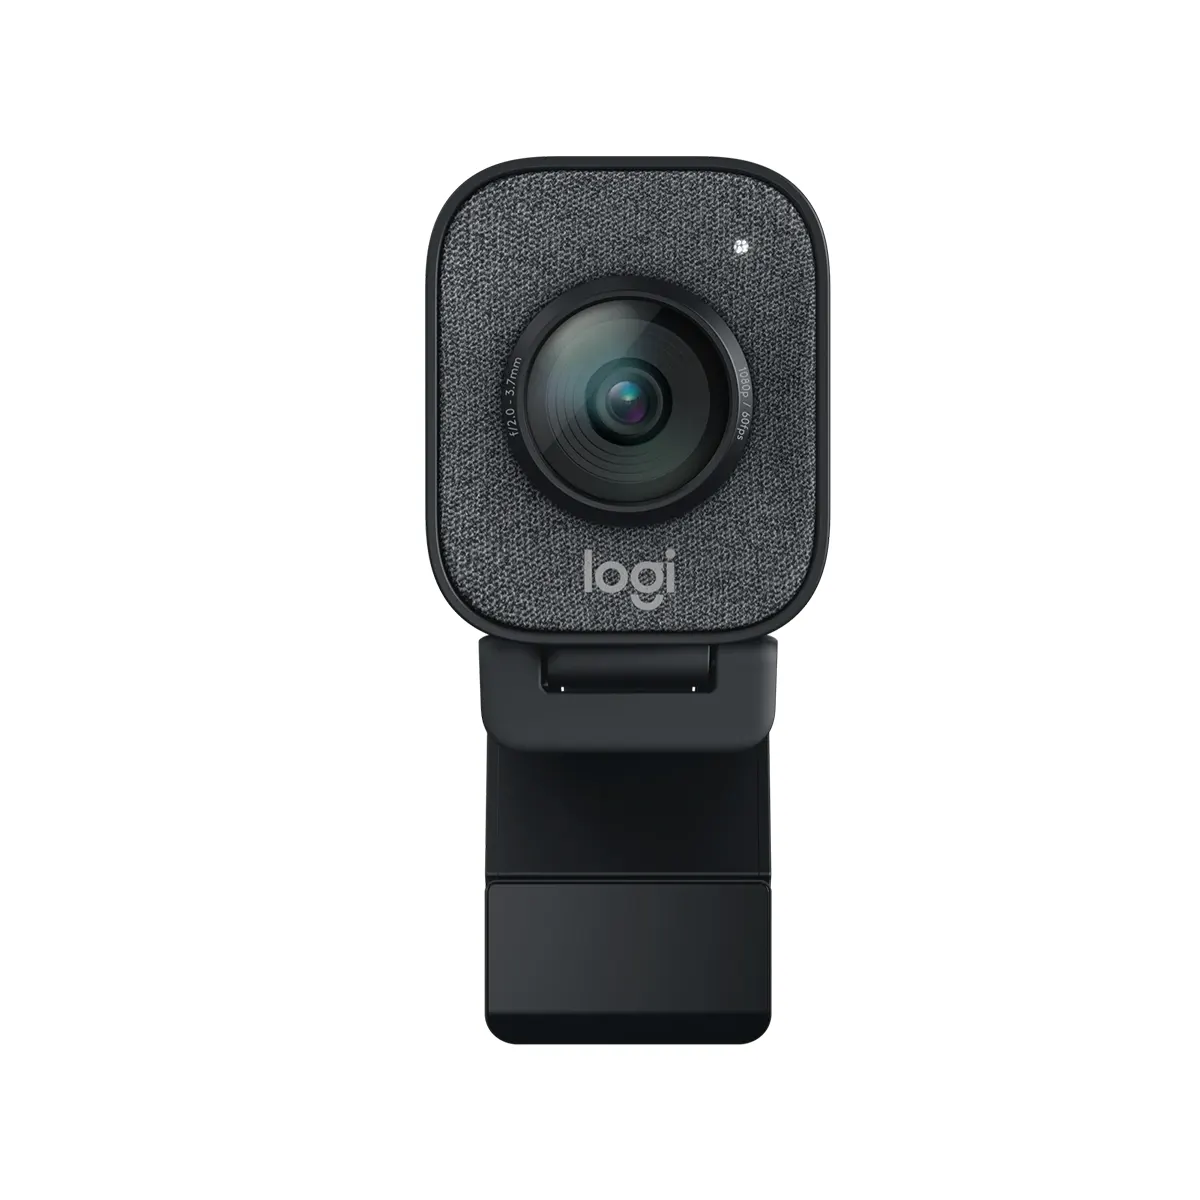 وب کم لاجیتک مدل Logitech StreamCam Full HD 1080p Streaming Webcam